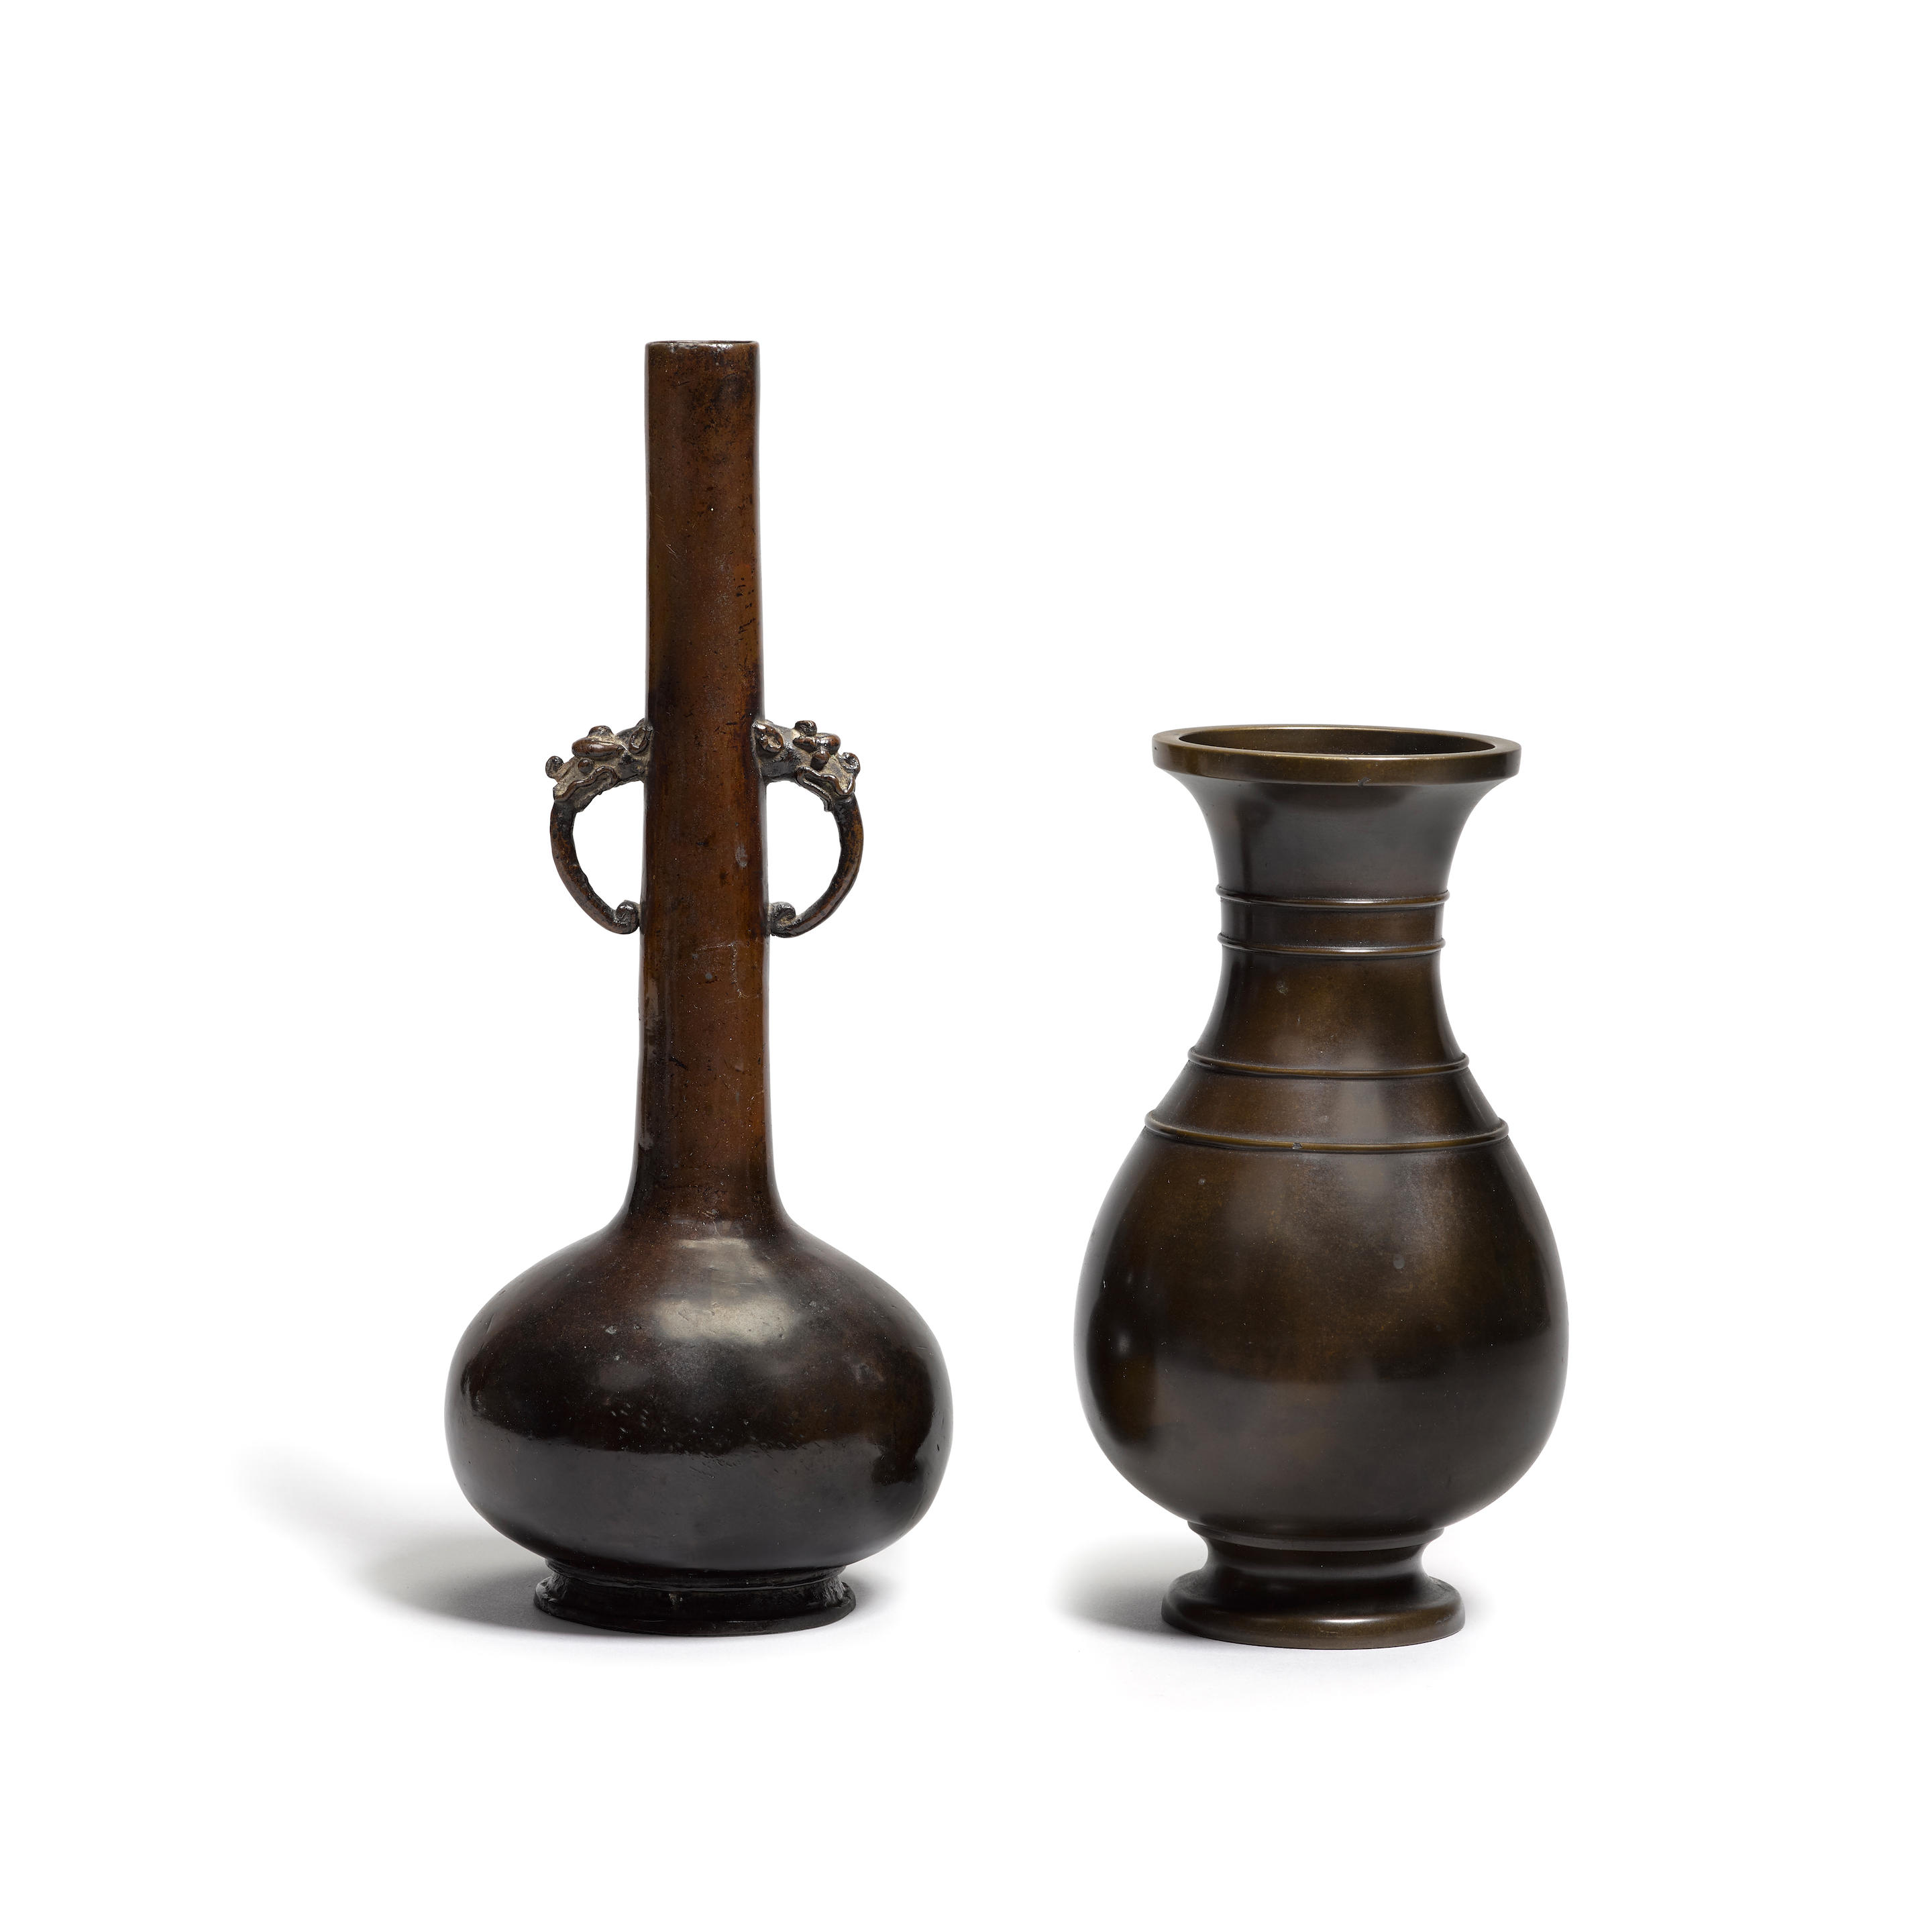 Two bronze vases